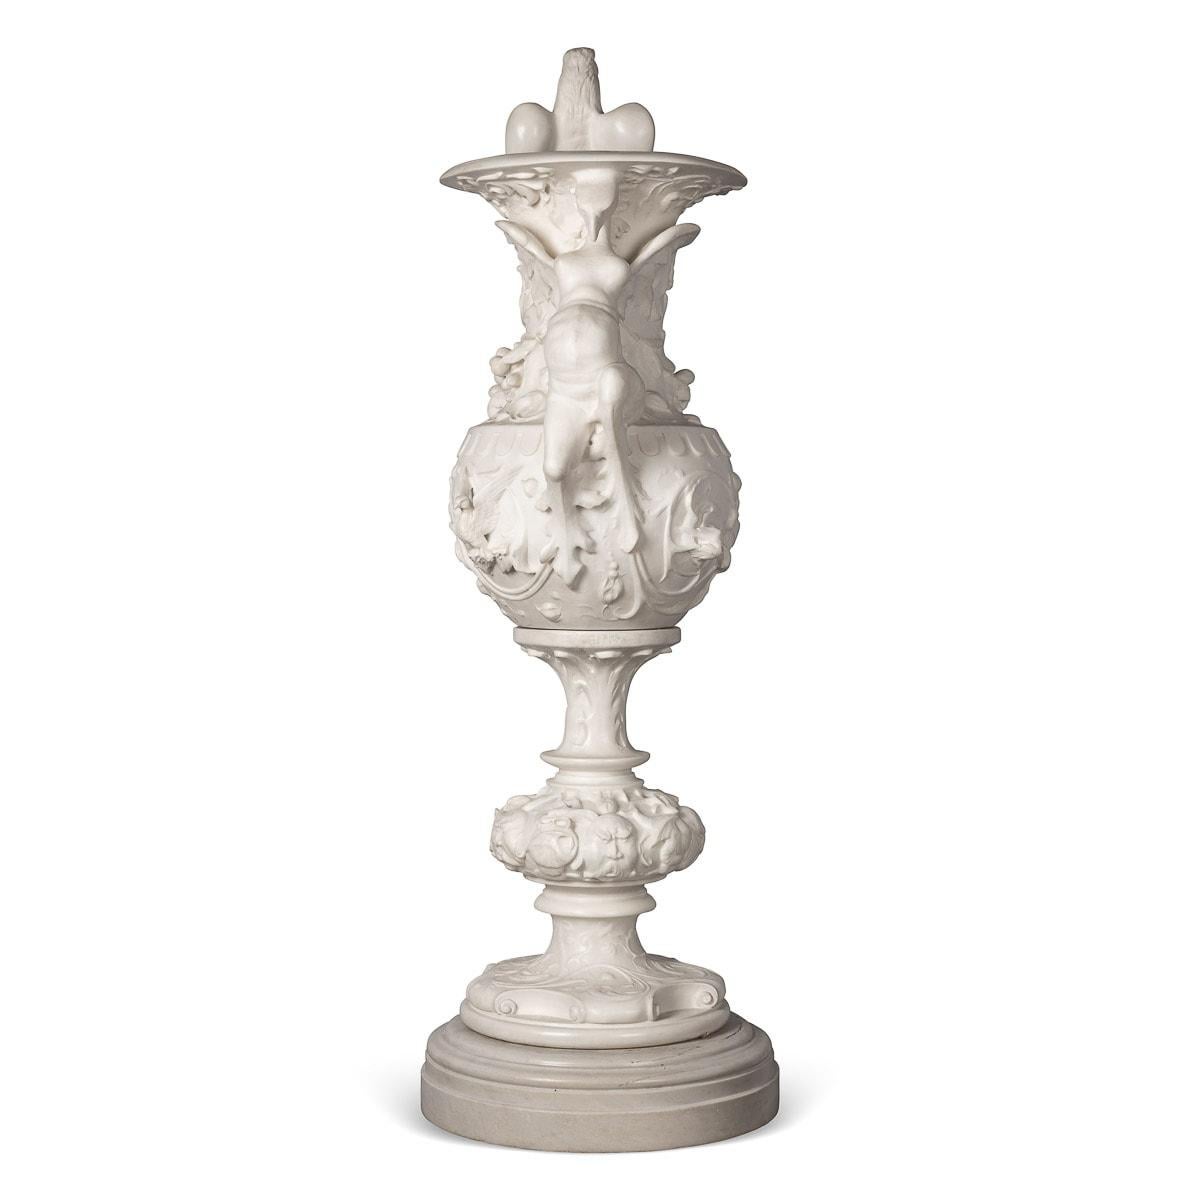 Vase antique en marbre italien de la fin du XIXe siècle. Ce marbre blanc fin a été sculpté à la fin des années 1800 et ciselé à la main pour créer une impressionnante œuvre d'art baroque. Il est décoré de feuillages, d'oiseaux exotiques, de fruits